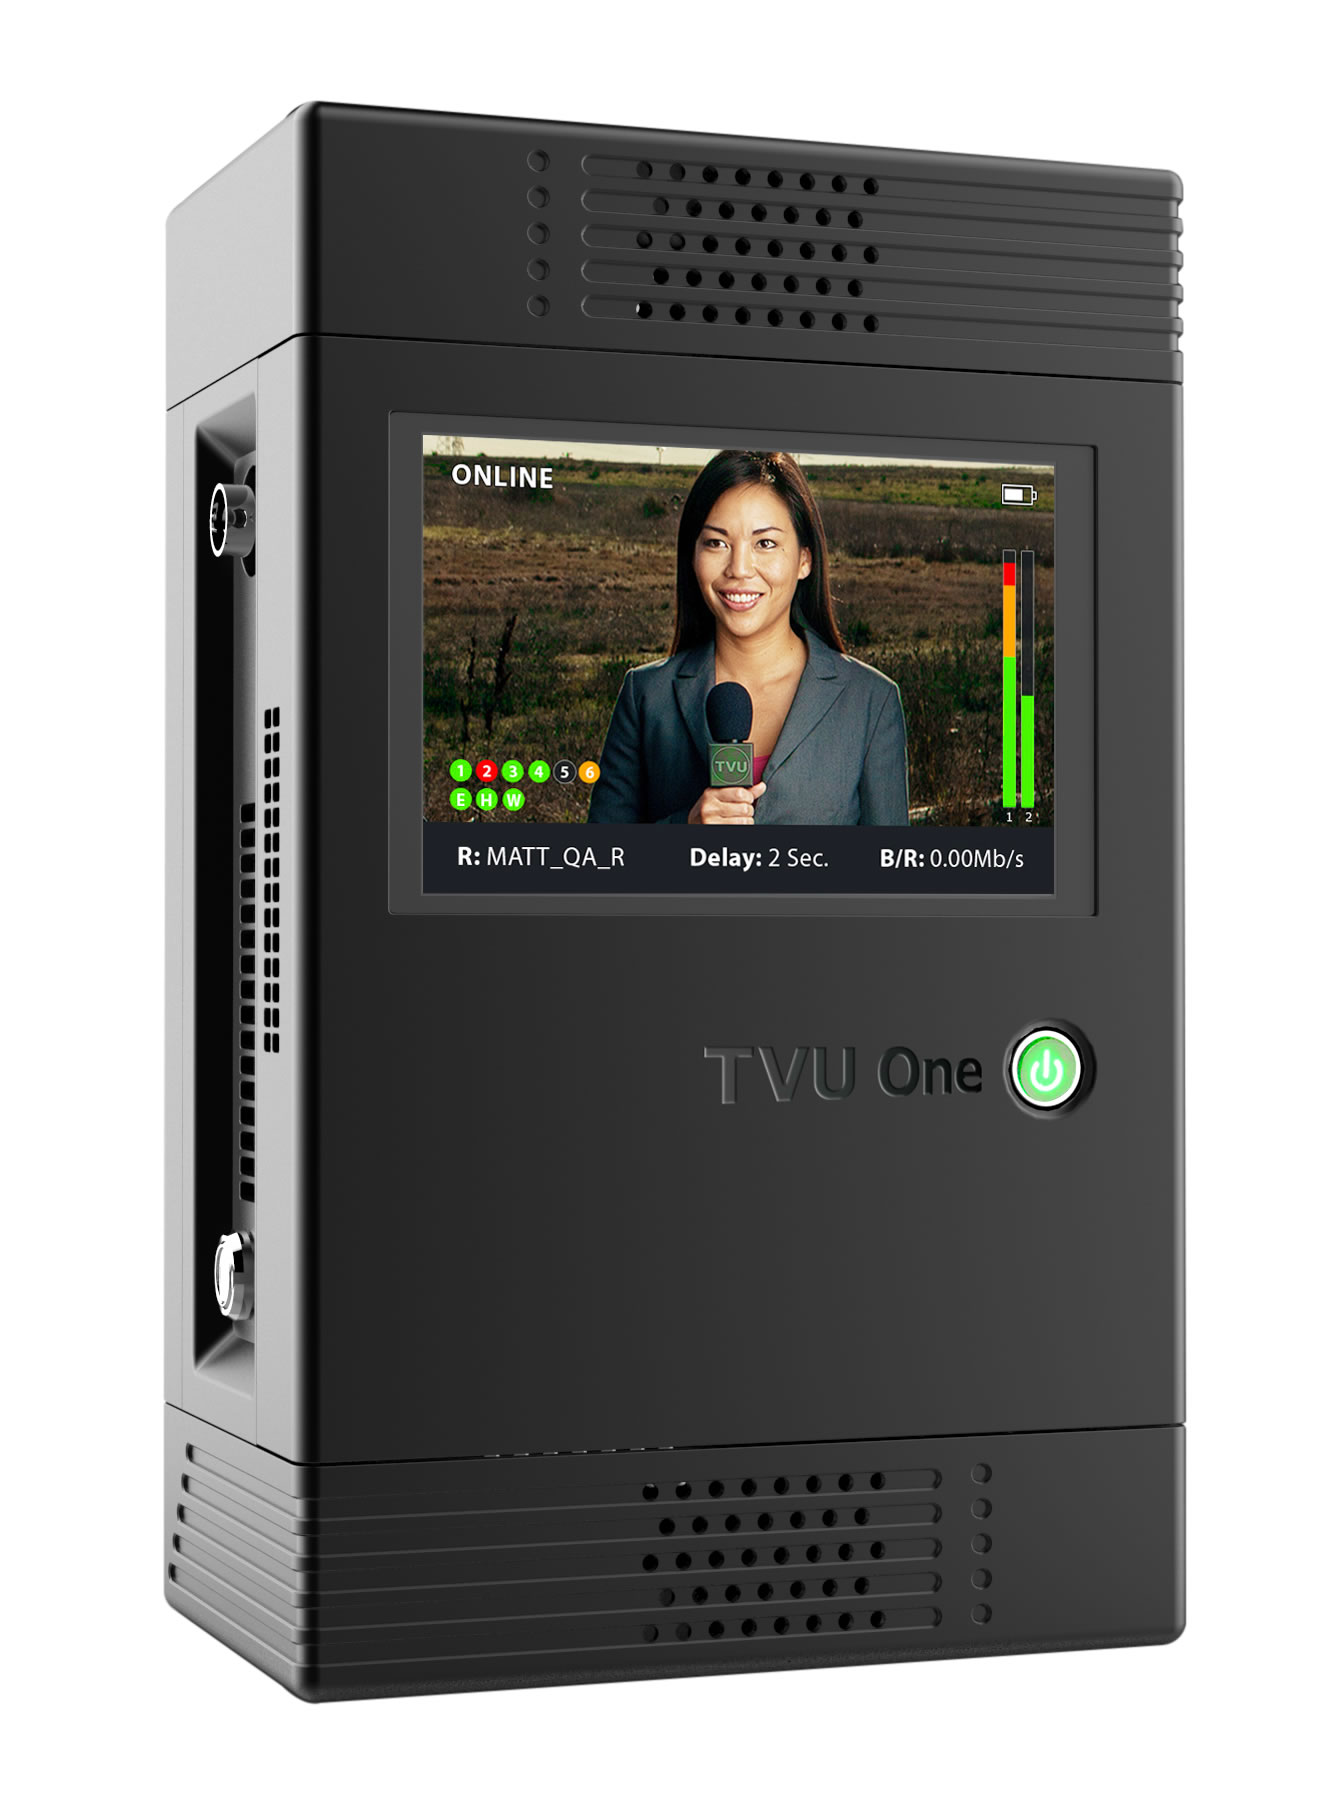 モバイル映像伝送システム「TVU One」